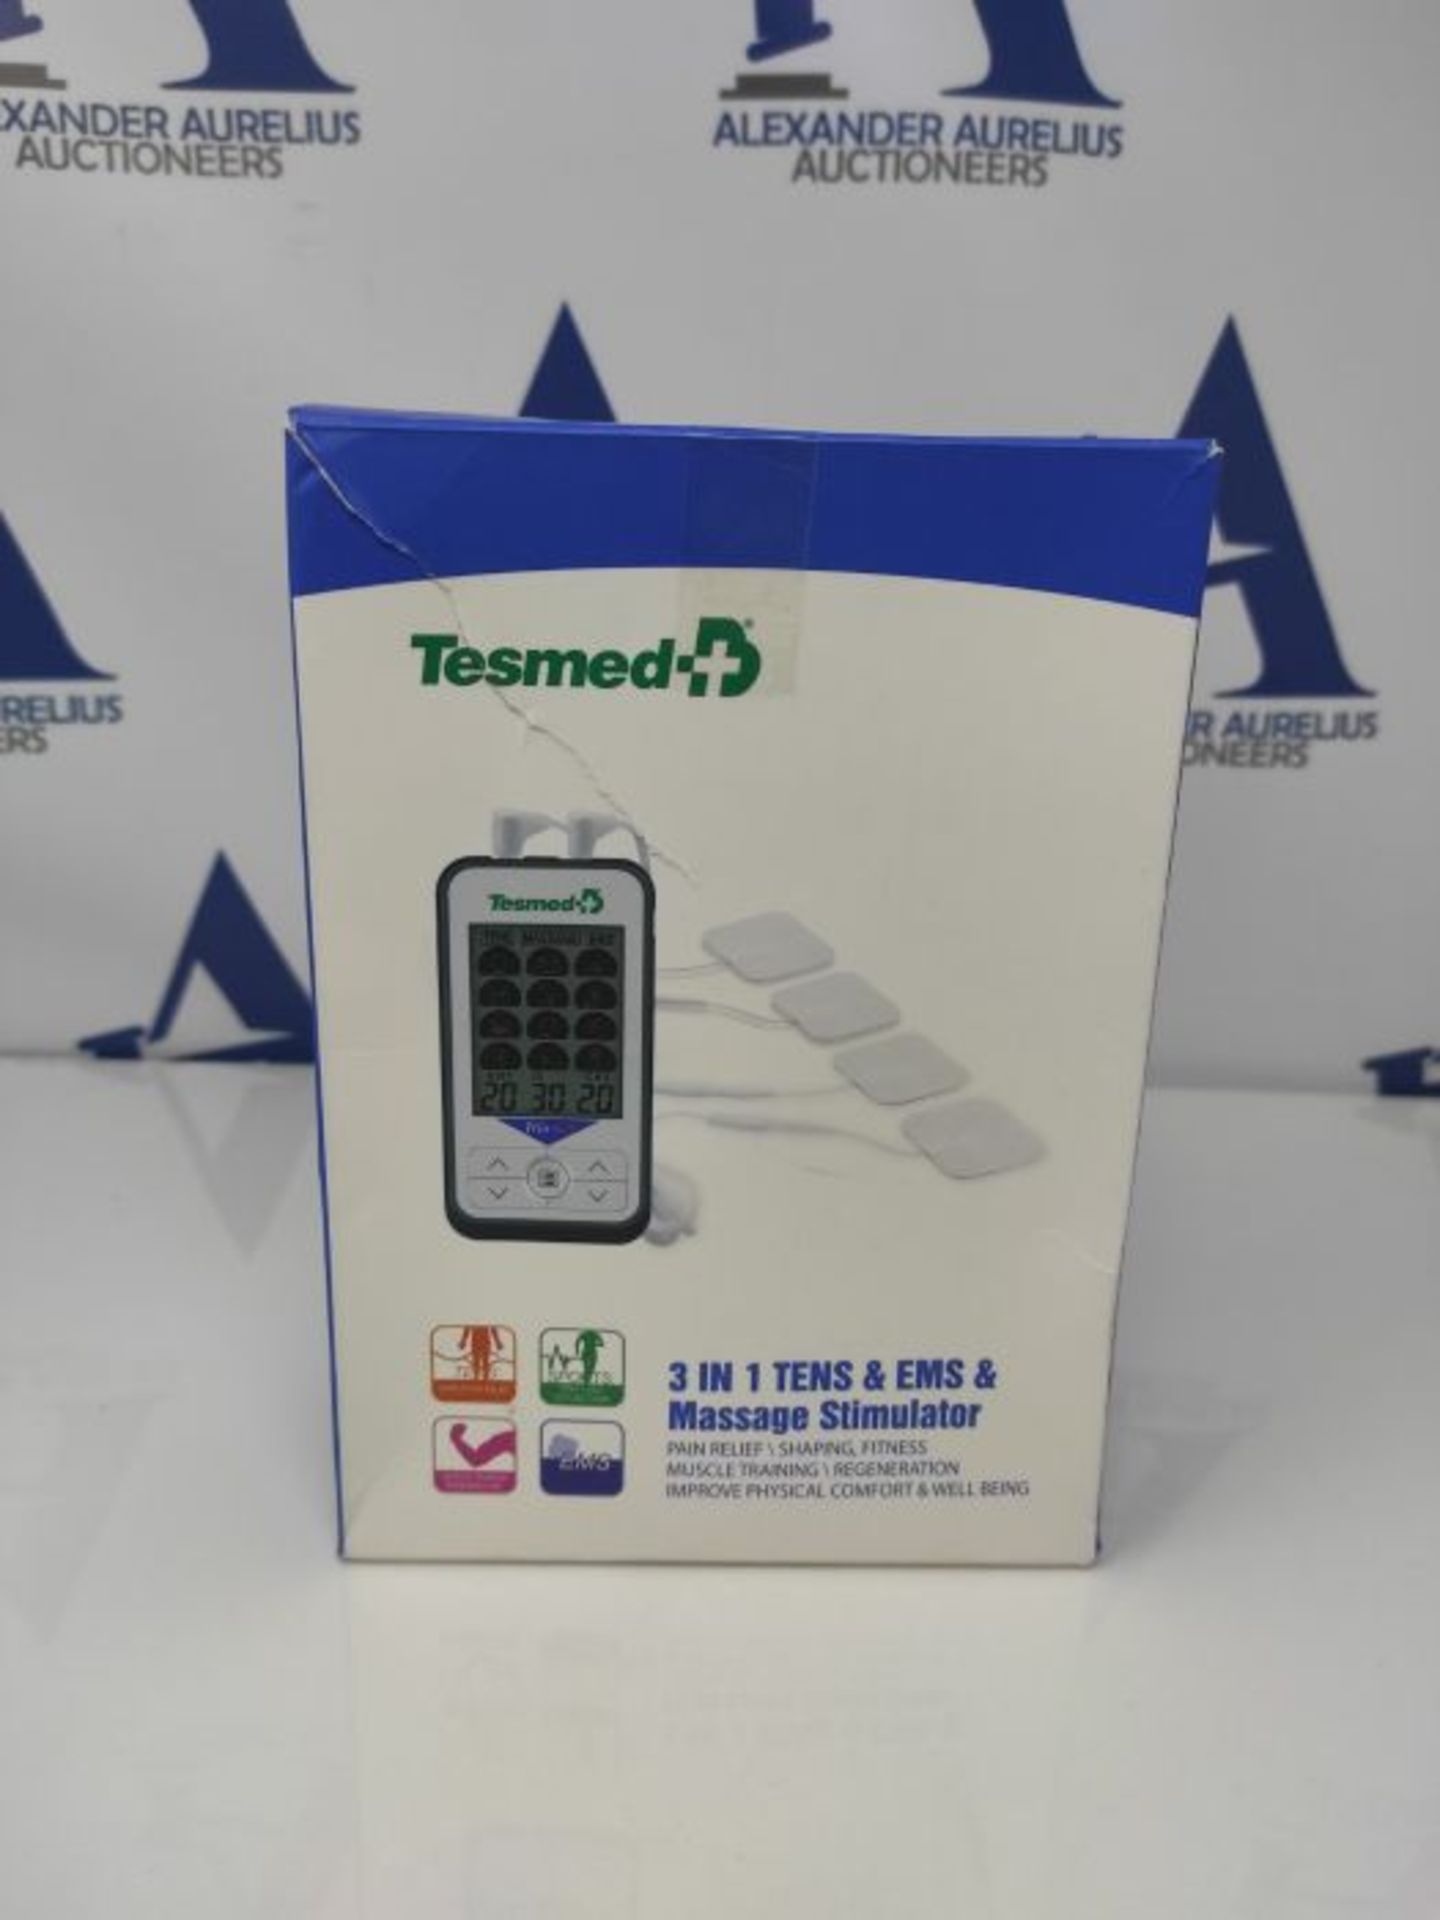 TESMED Trio 6.5 elettrostimolatore con Batteria Ricaricabile, Muscolare, TENS e Massag - Image 2 of 3